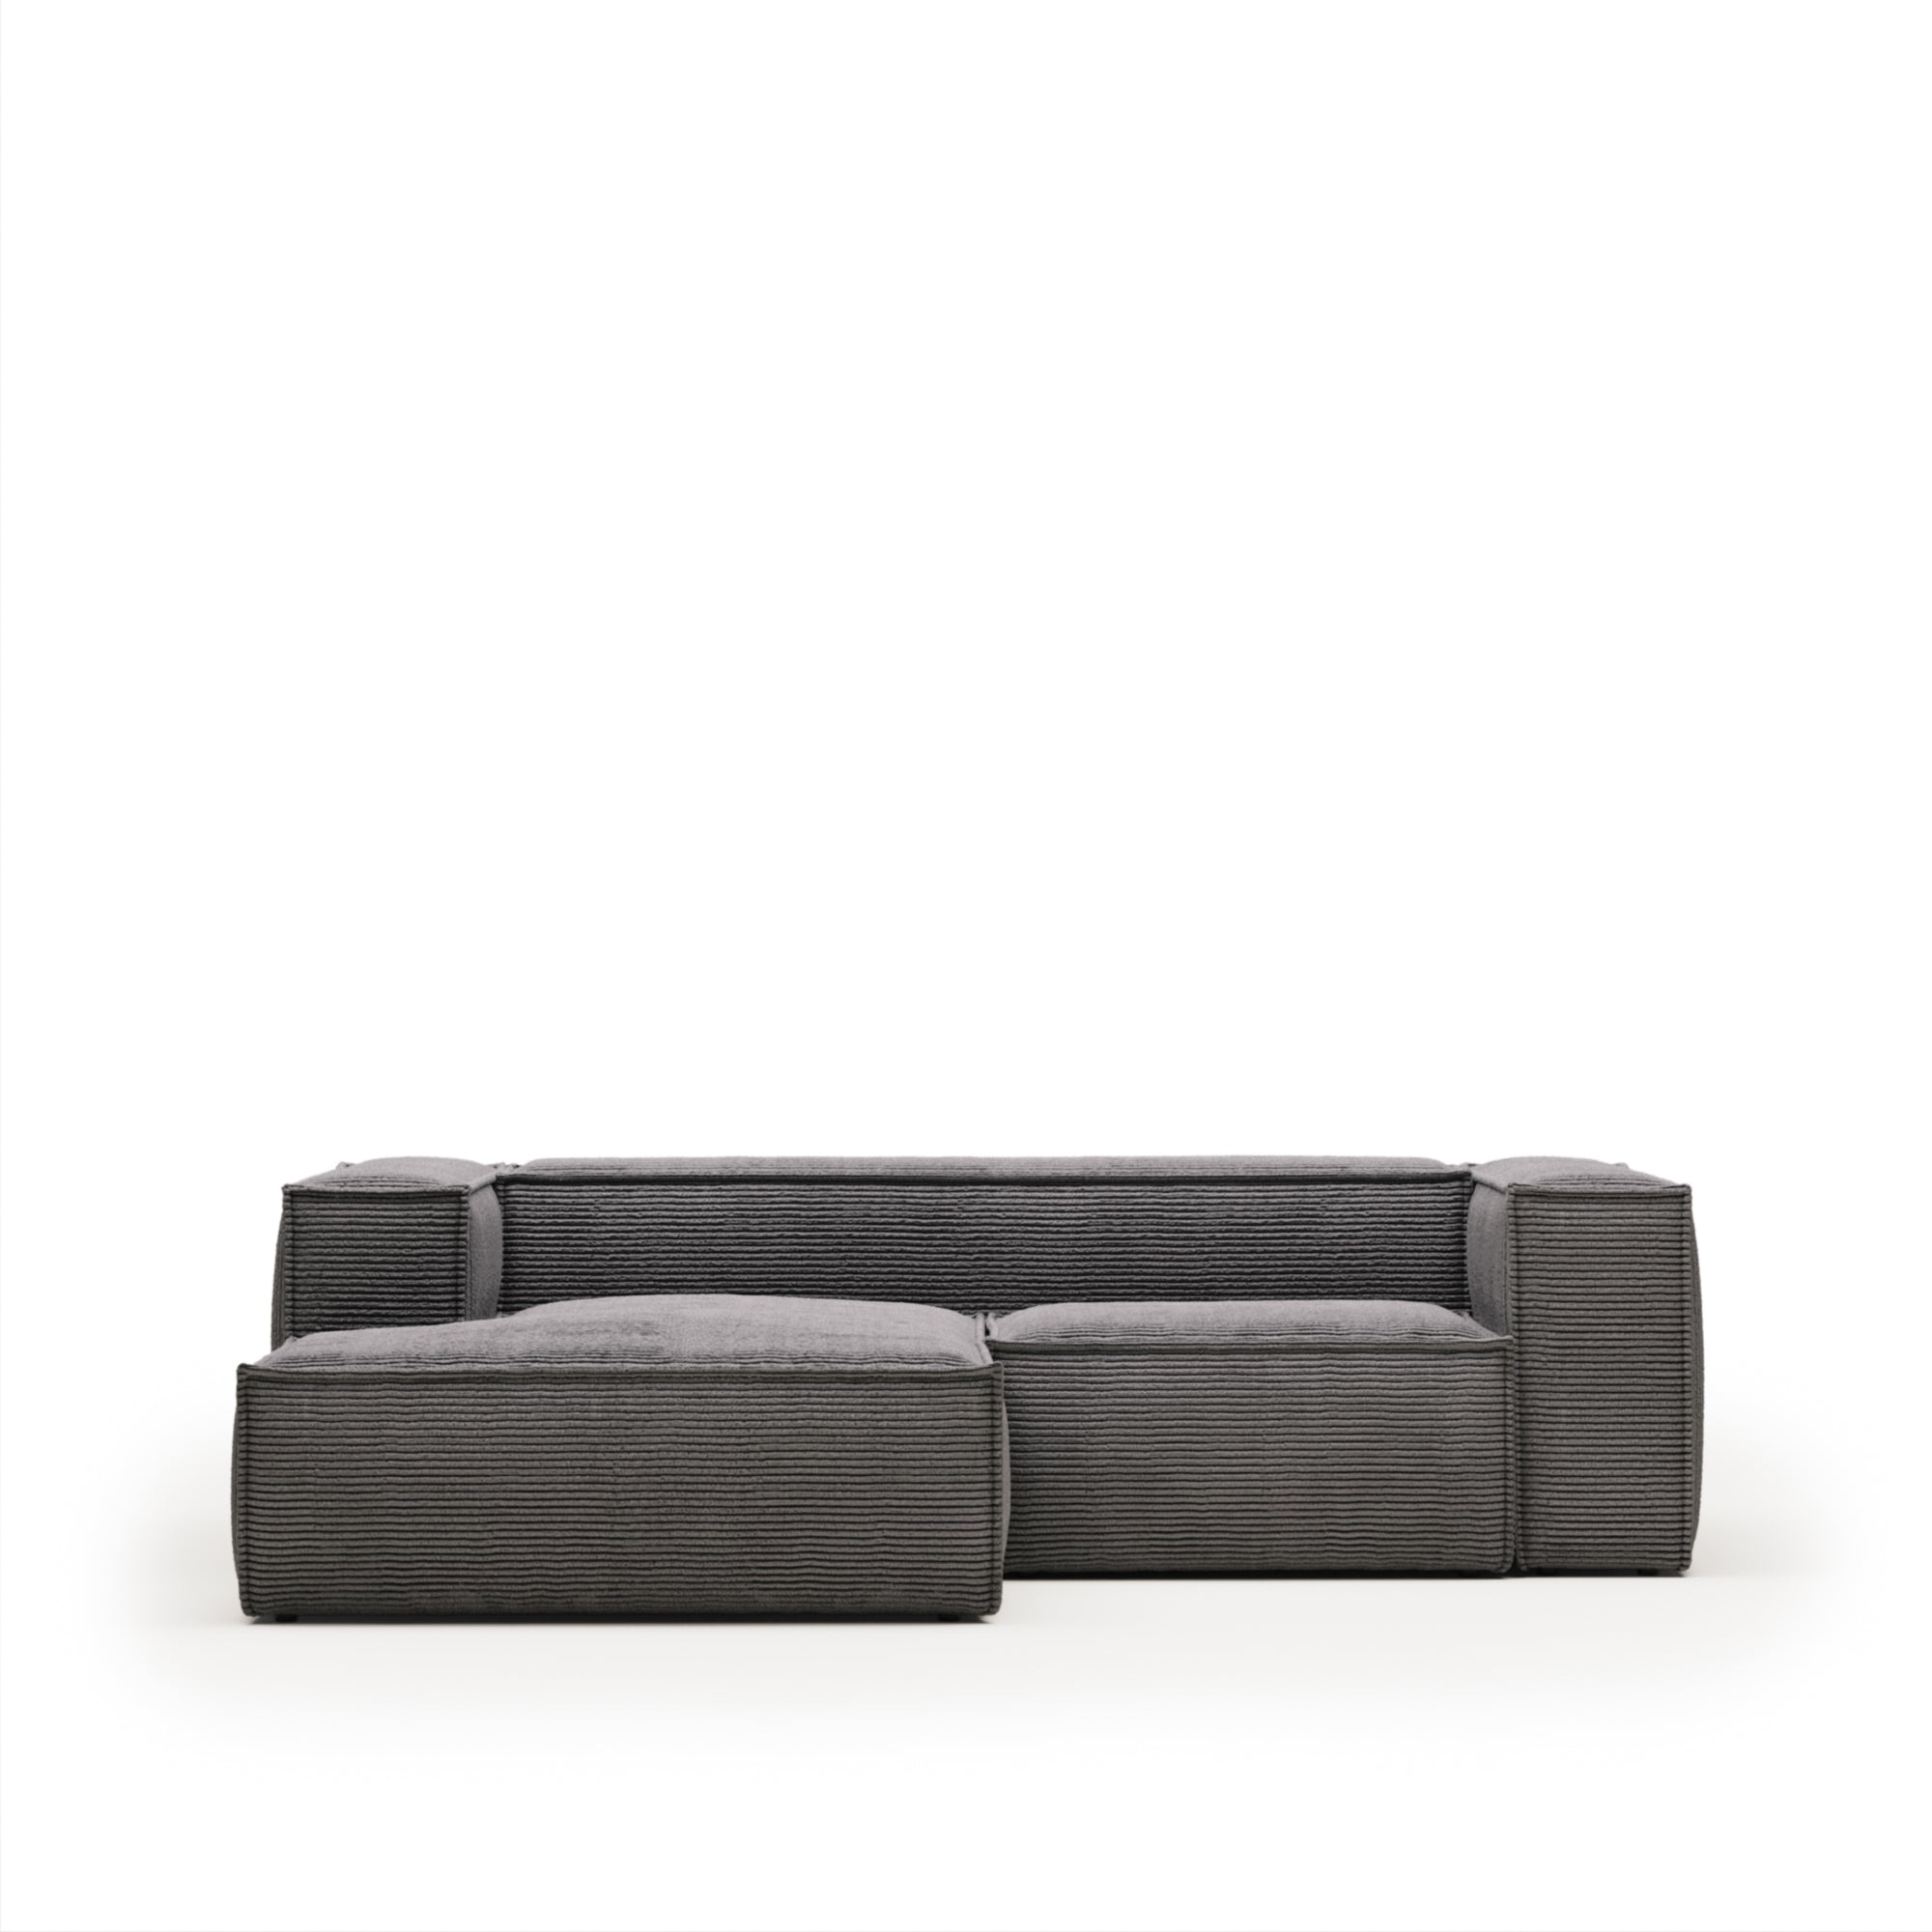 Blok 2 személyes kanapé bal oldali fekvőfotellel, szürke, széles varrású kordbársonyból, 240 cm